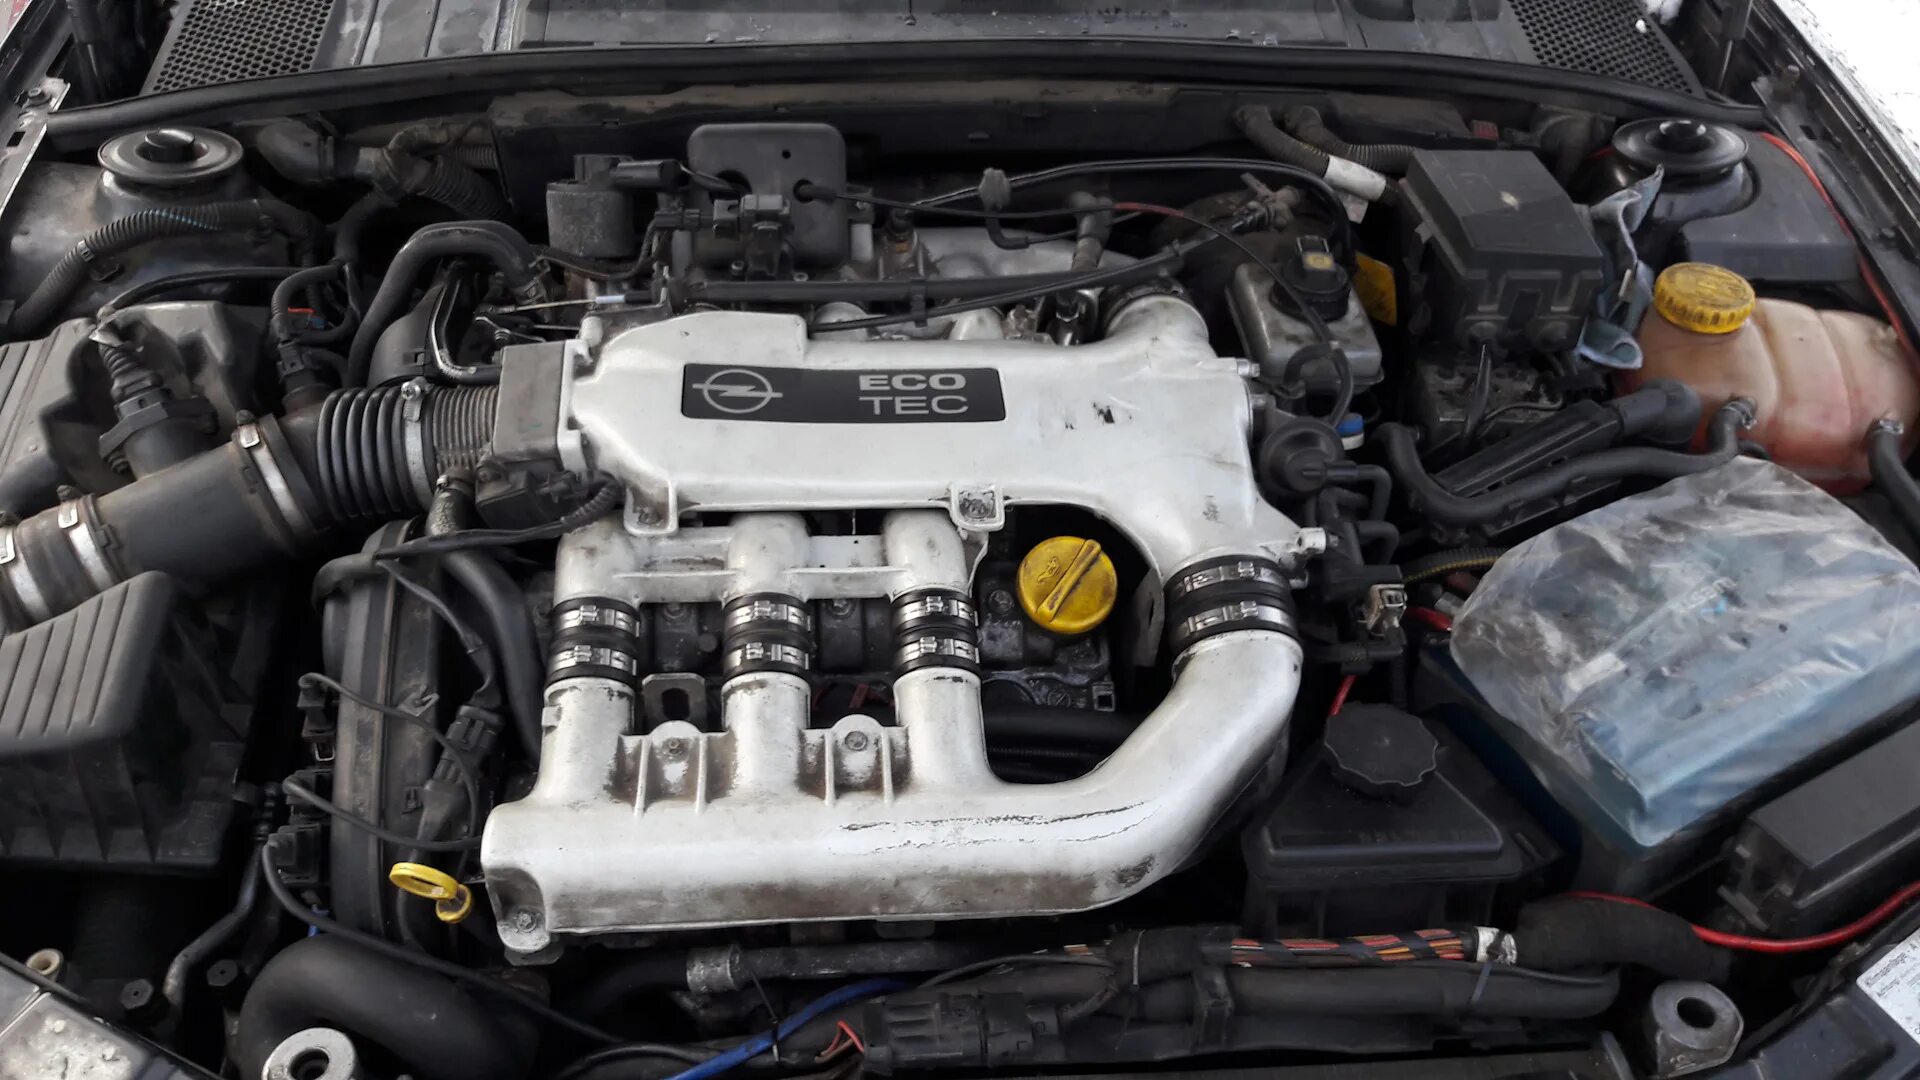 Не заводиться вектра б. Opel Vectra b 2.5 v6. 2.5 V6 Vectra b. Опель Вектра а 2.5 v6. Opel Vectra b v6.